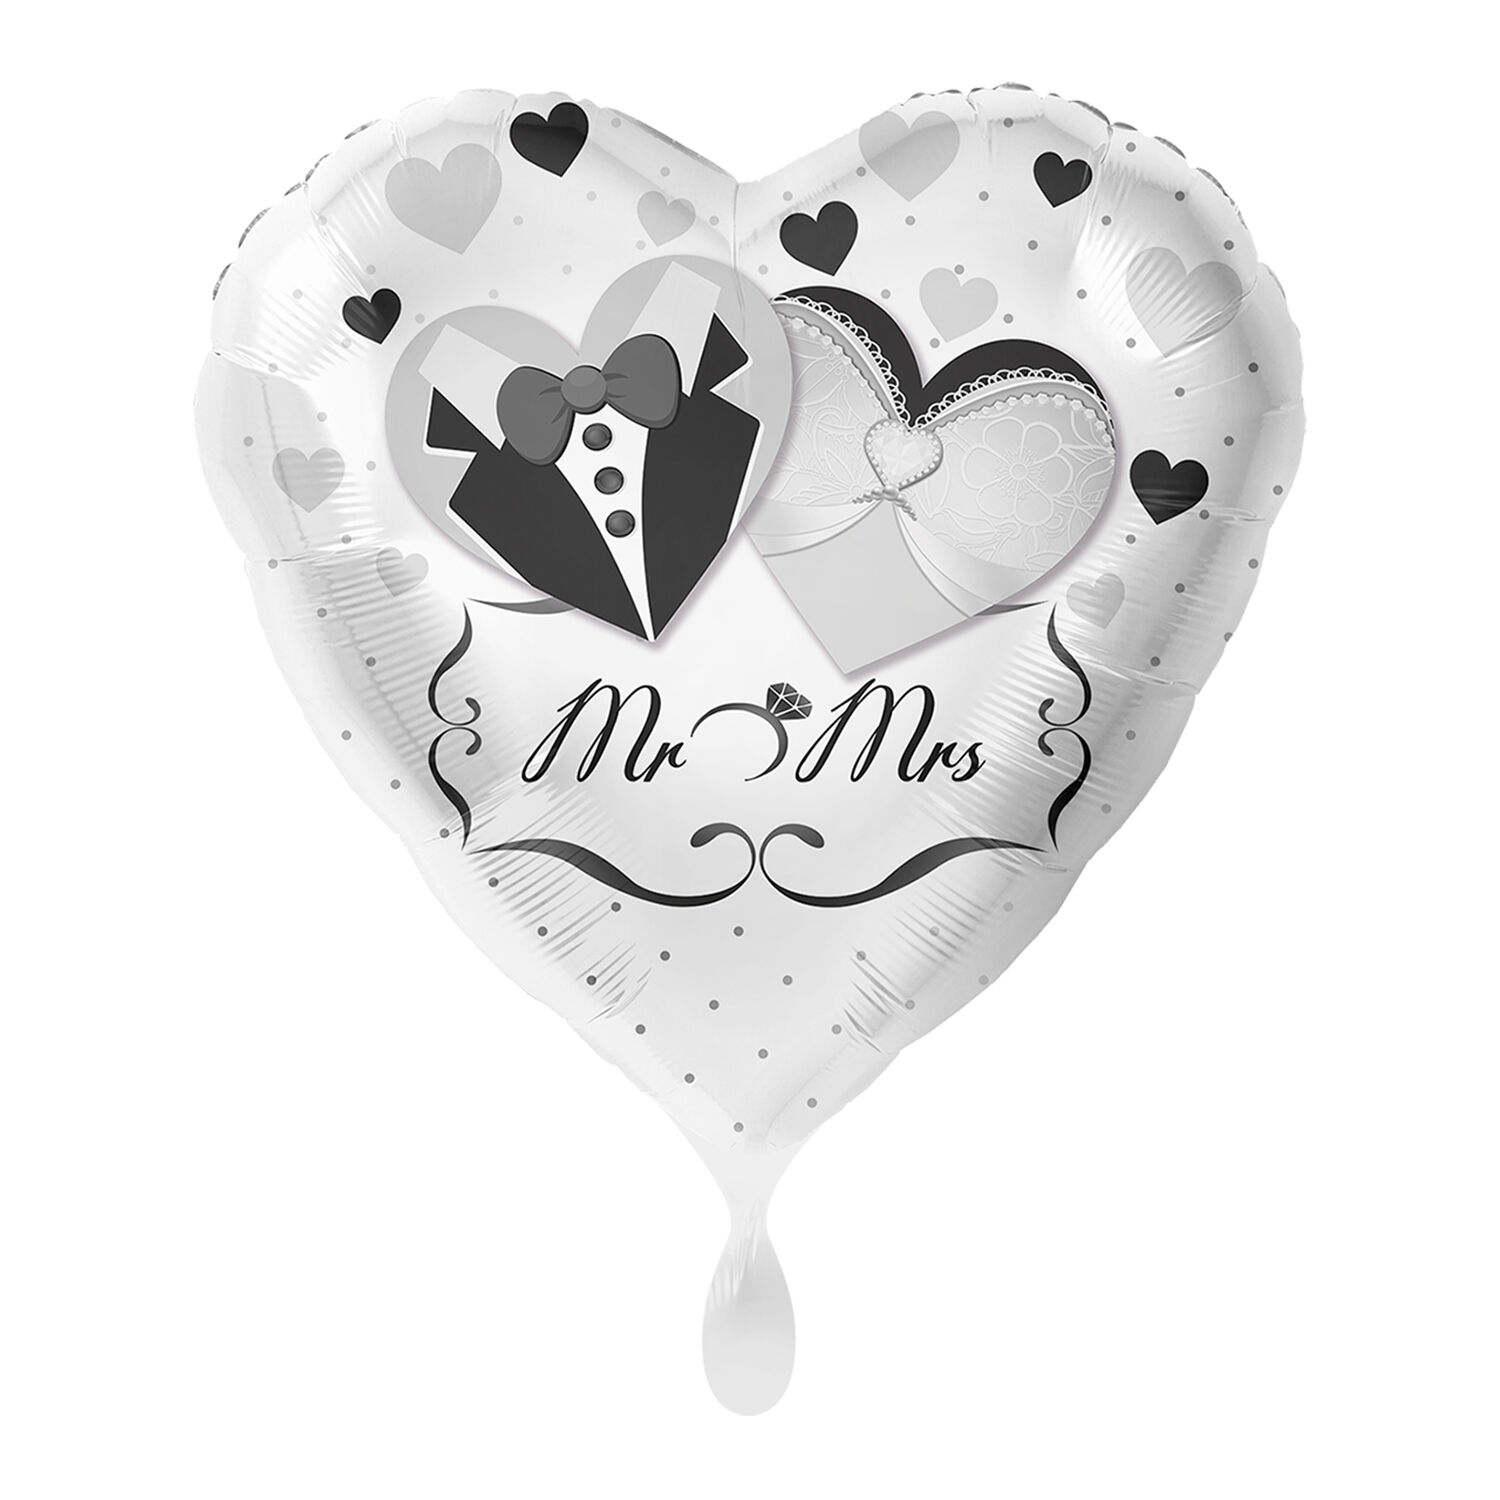 NEU Folienballon - Mrs. & Mrs. Love - ca. 45cm Durchmesser